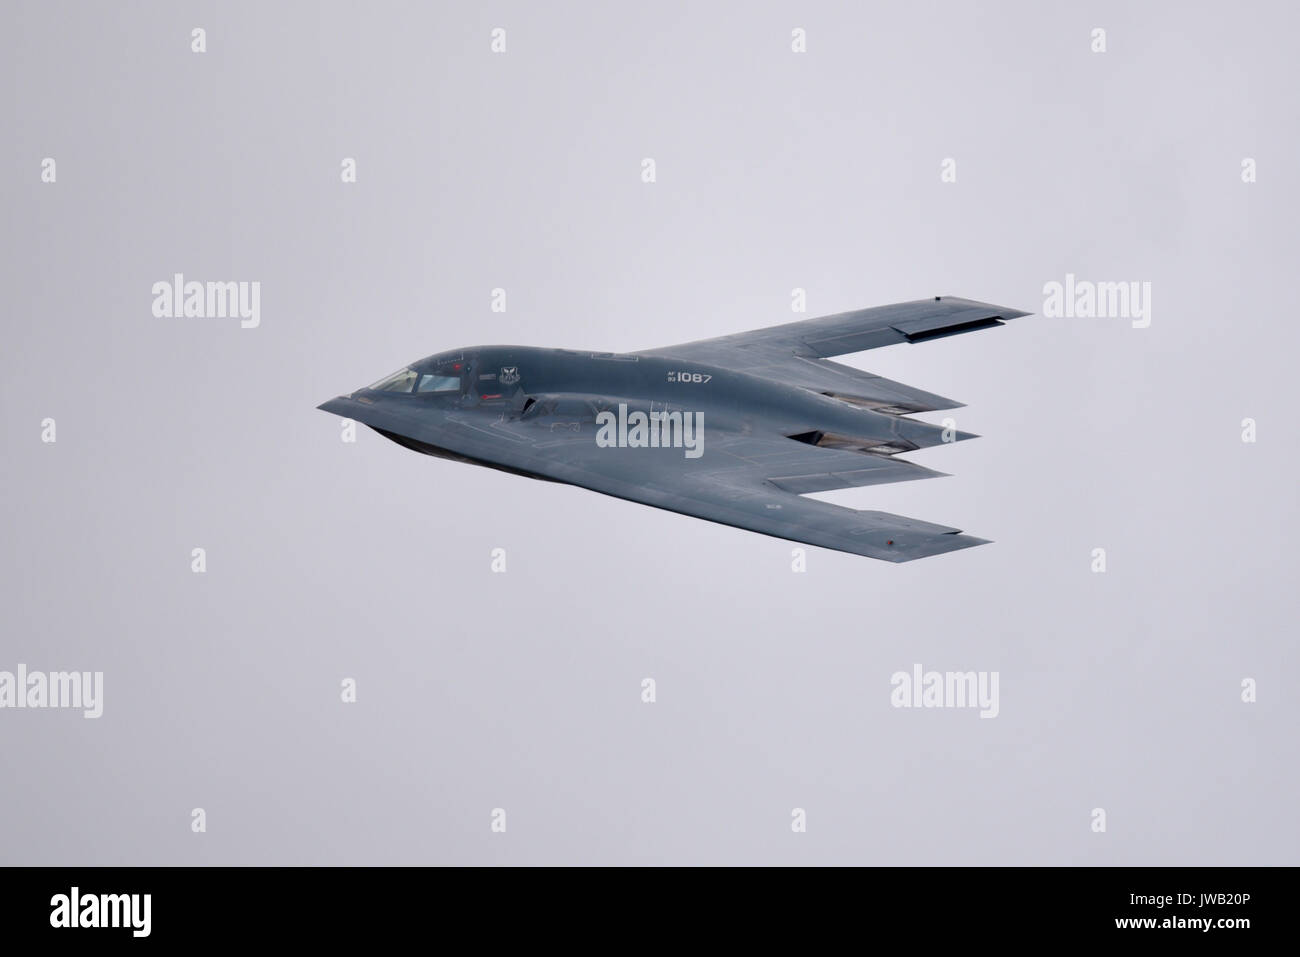 Bombardiere stealth Northrop Grumman B-2 Spirit dello US Air Force Global Strike Command. Nominato Spirit of Pennsylvania, in volo al RIAT Airshow, Regno Unito Foto Stock